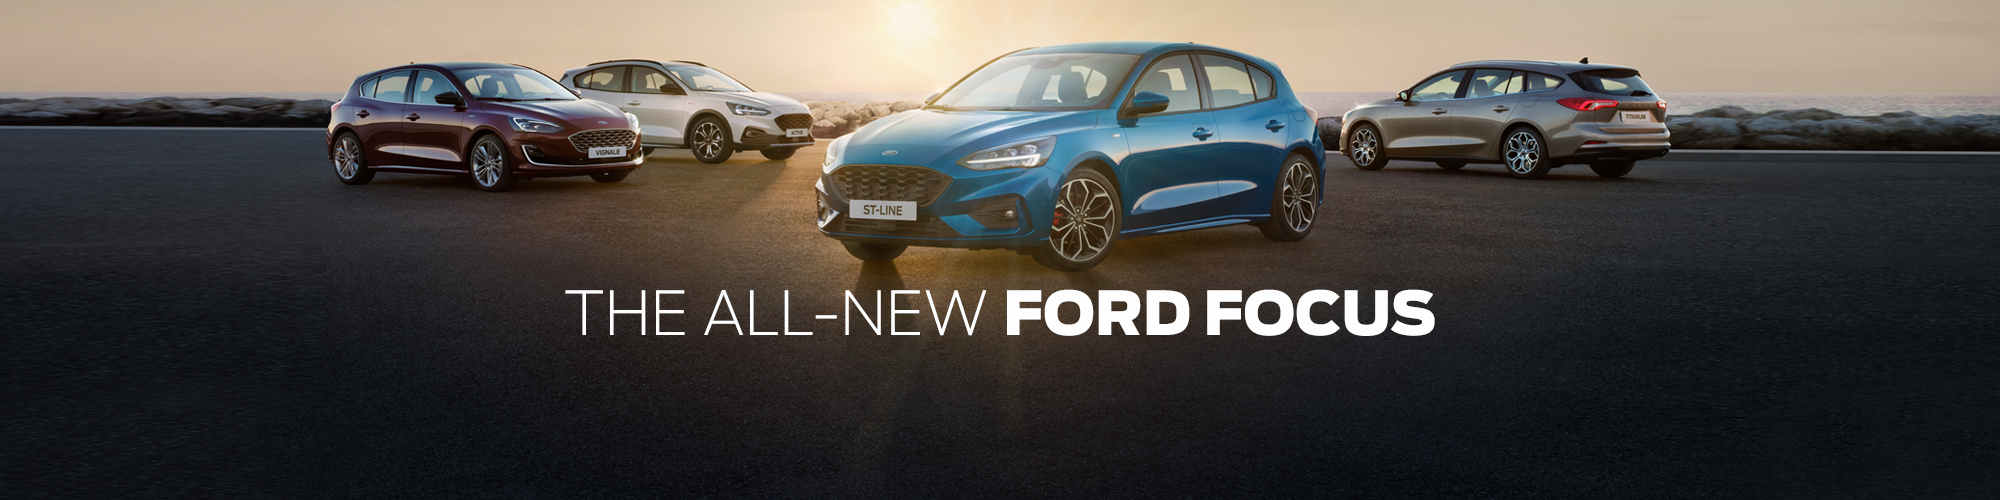 All New ford Focus Range